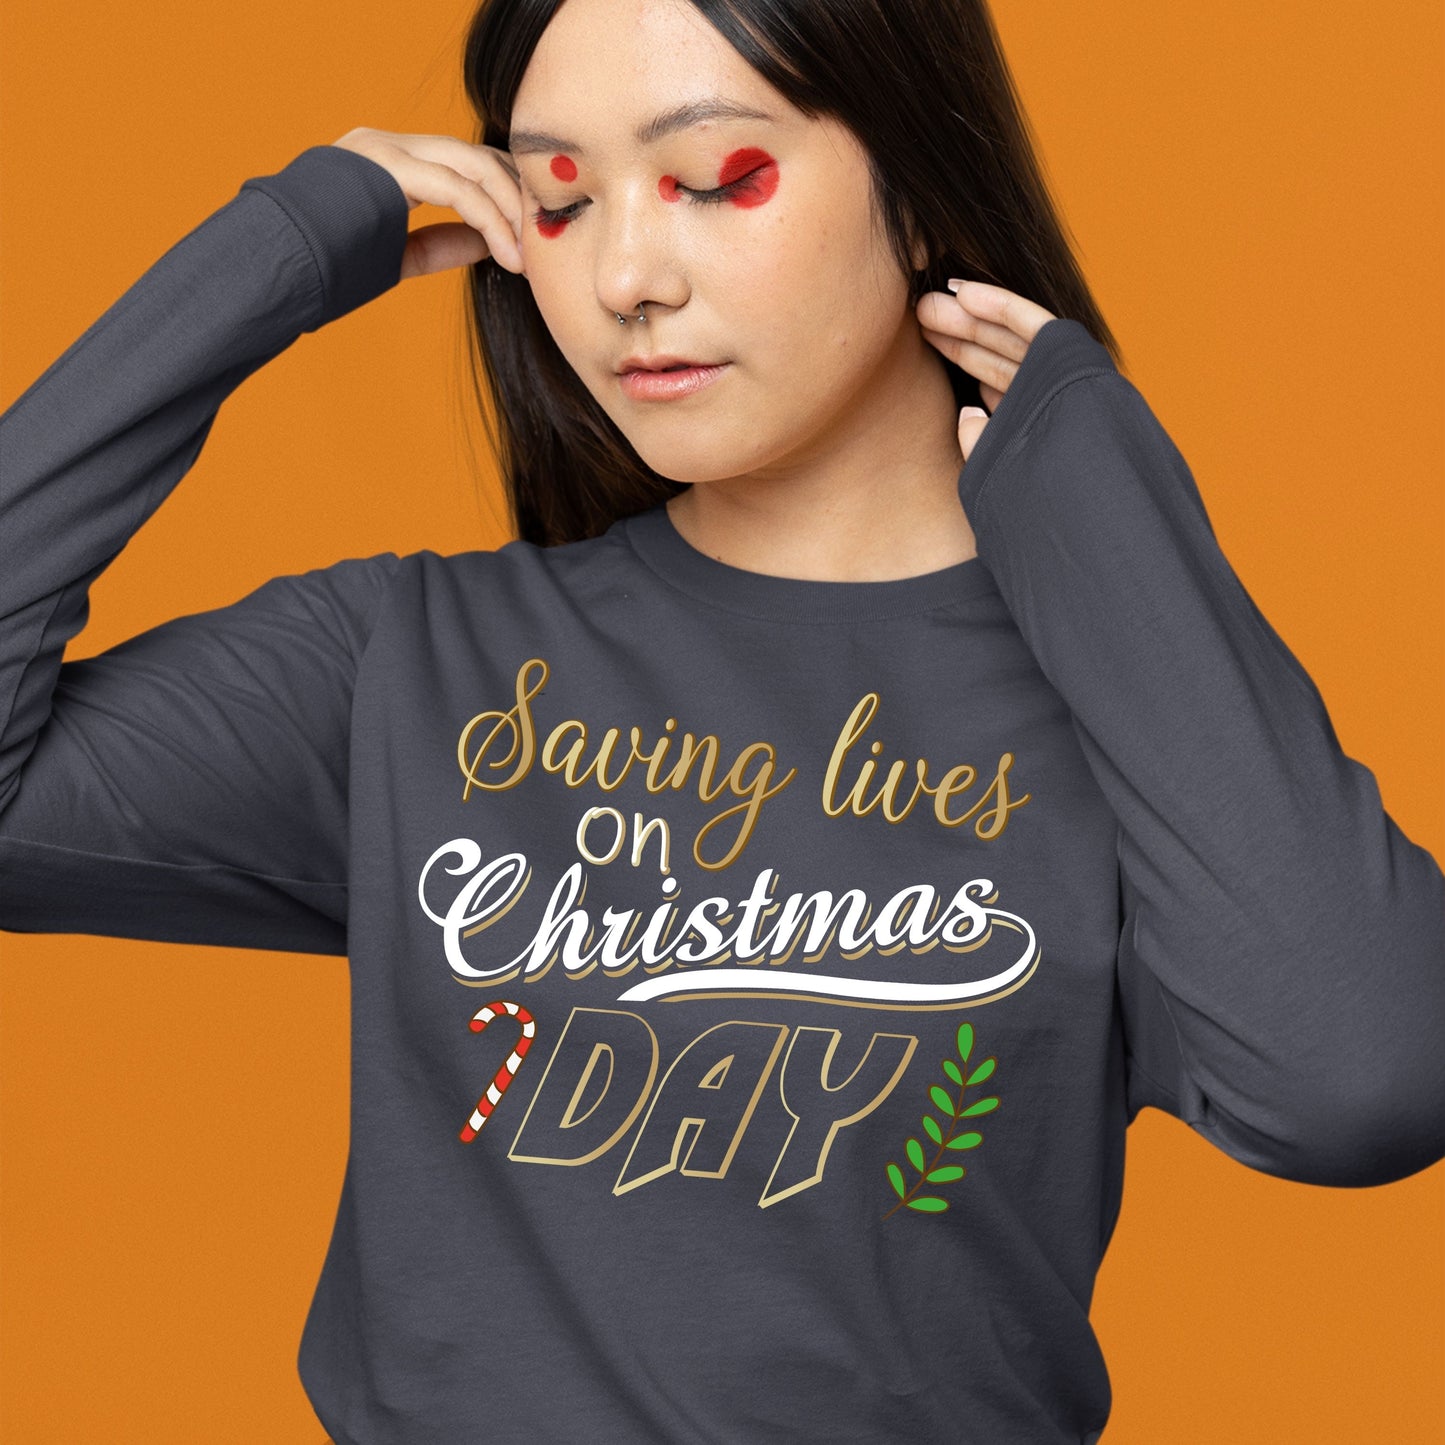 Saving Lives on Christmas Day, Nurse Shirt, Christmas Sweatshirt, Christmas School TShirt, Nurse Gift for Woman, Christmas Shirt